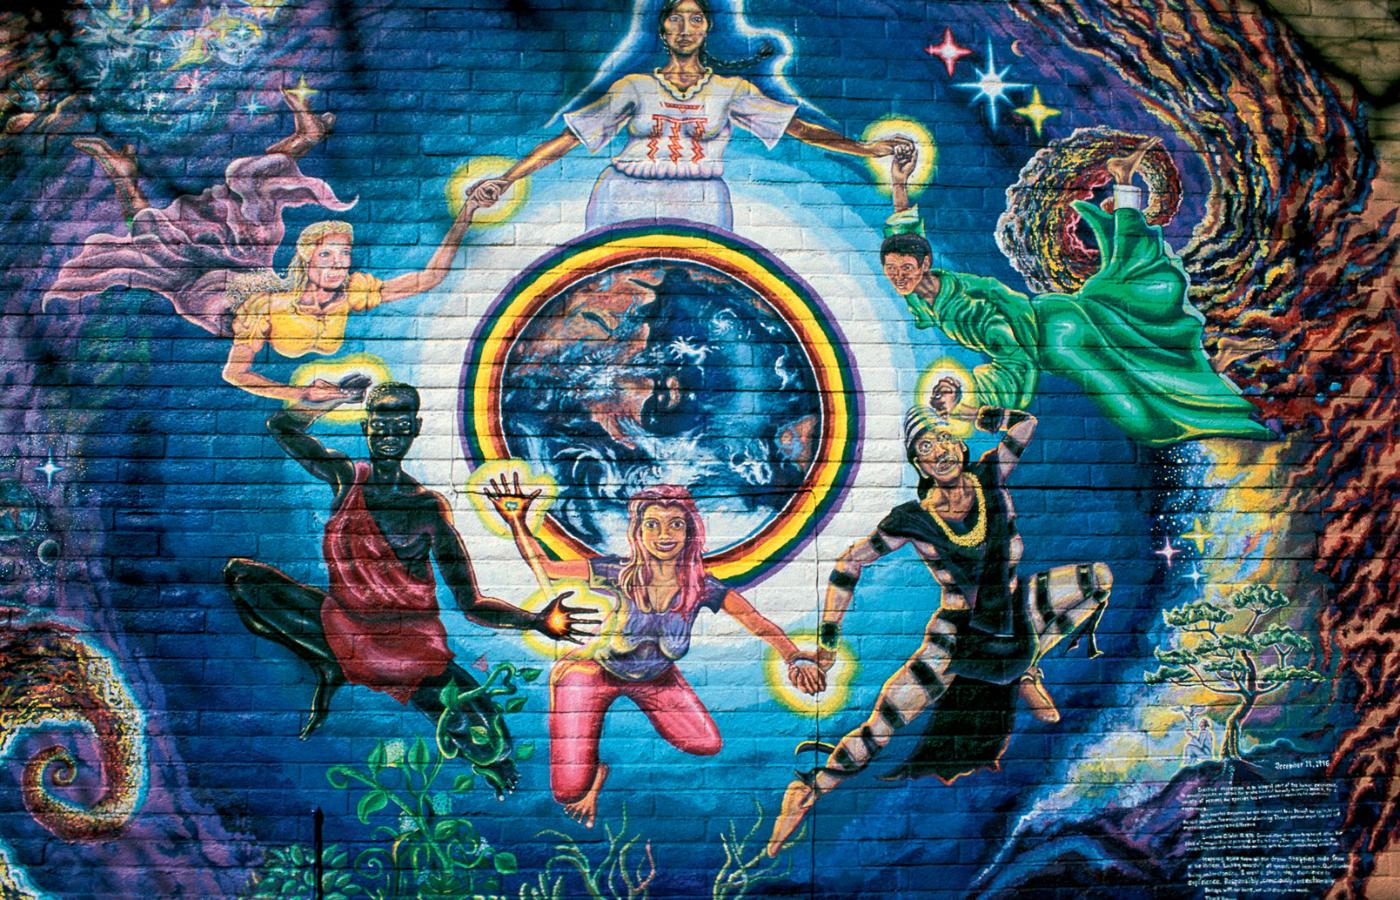 Współczesny mural w Sedonie, w Arizonie, popularnym miejscu kultu New Age.